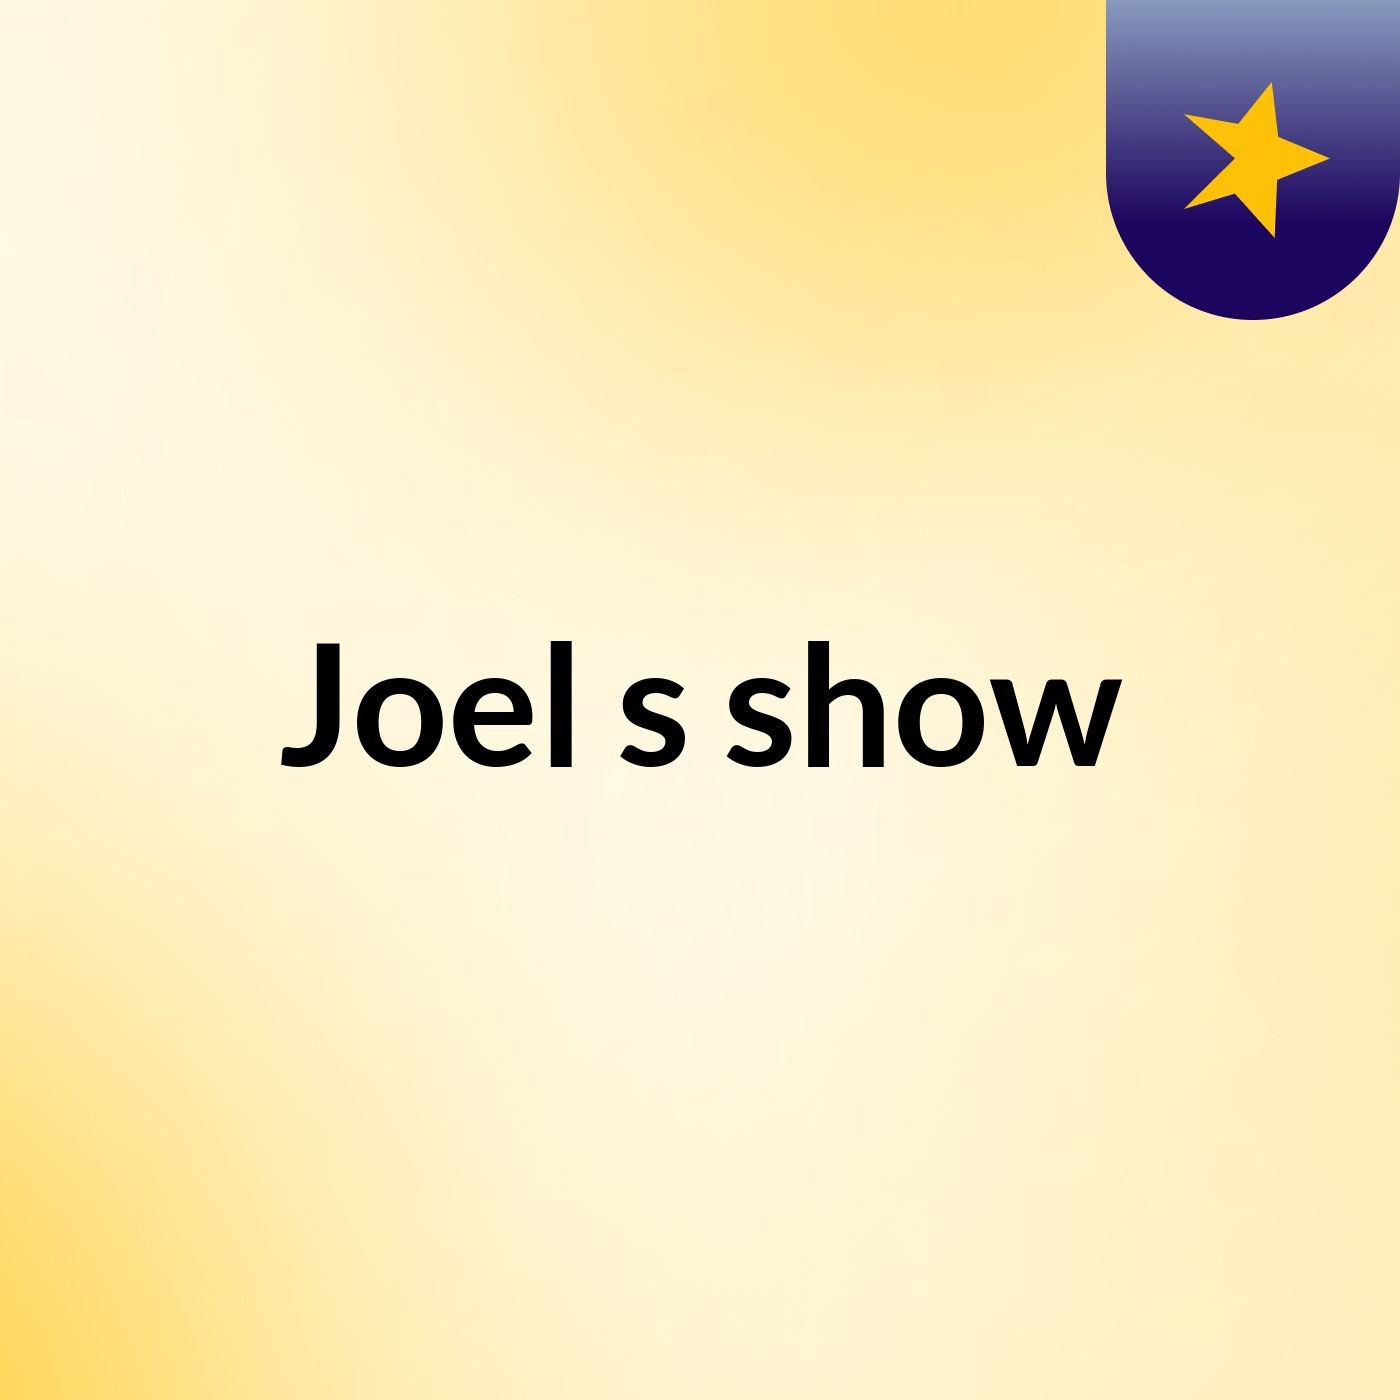 Joel's show